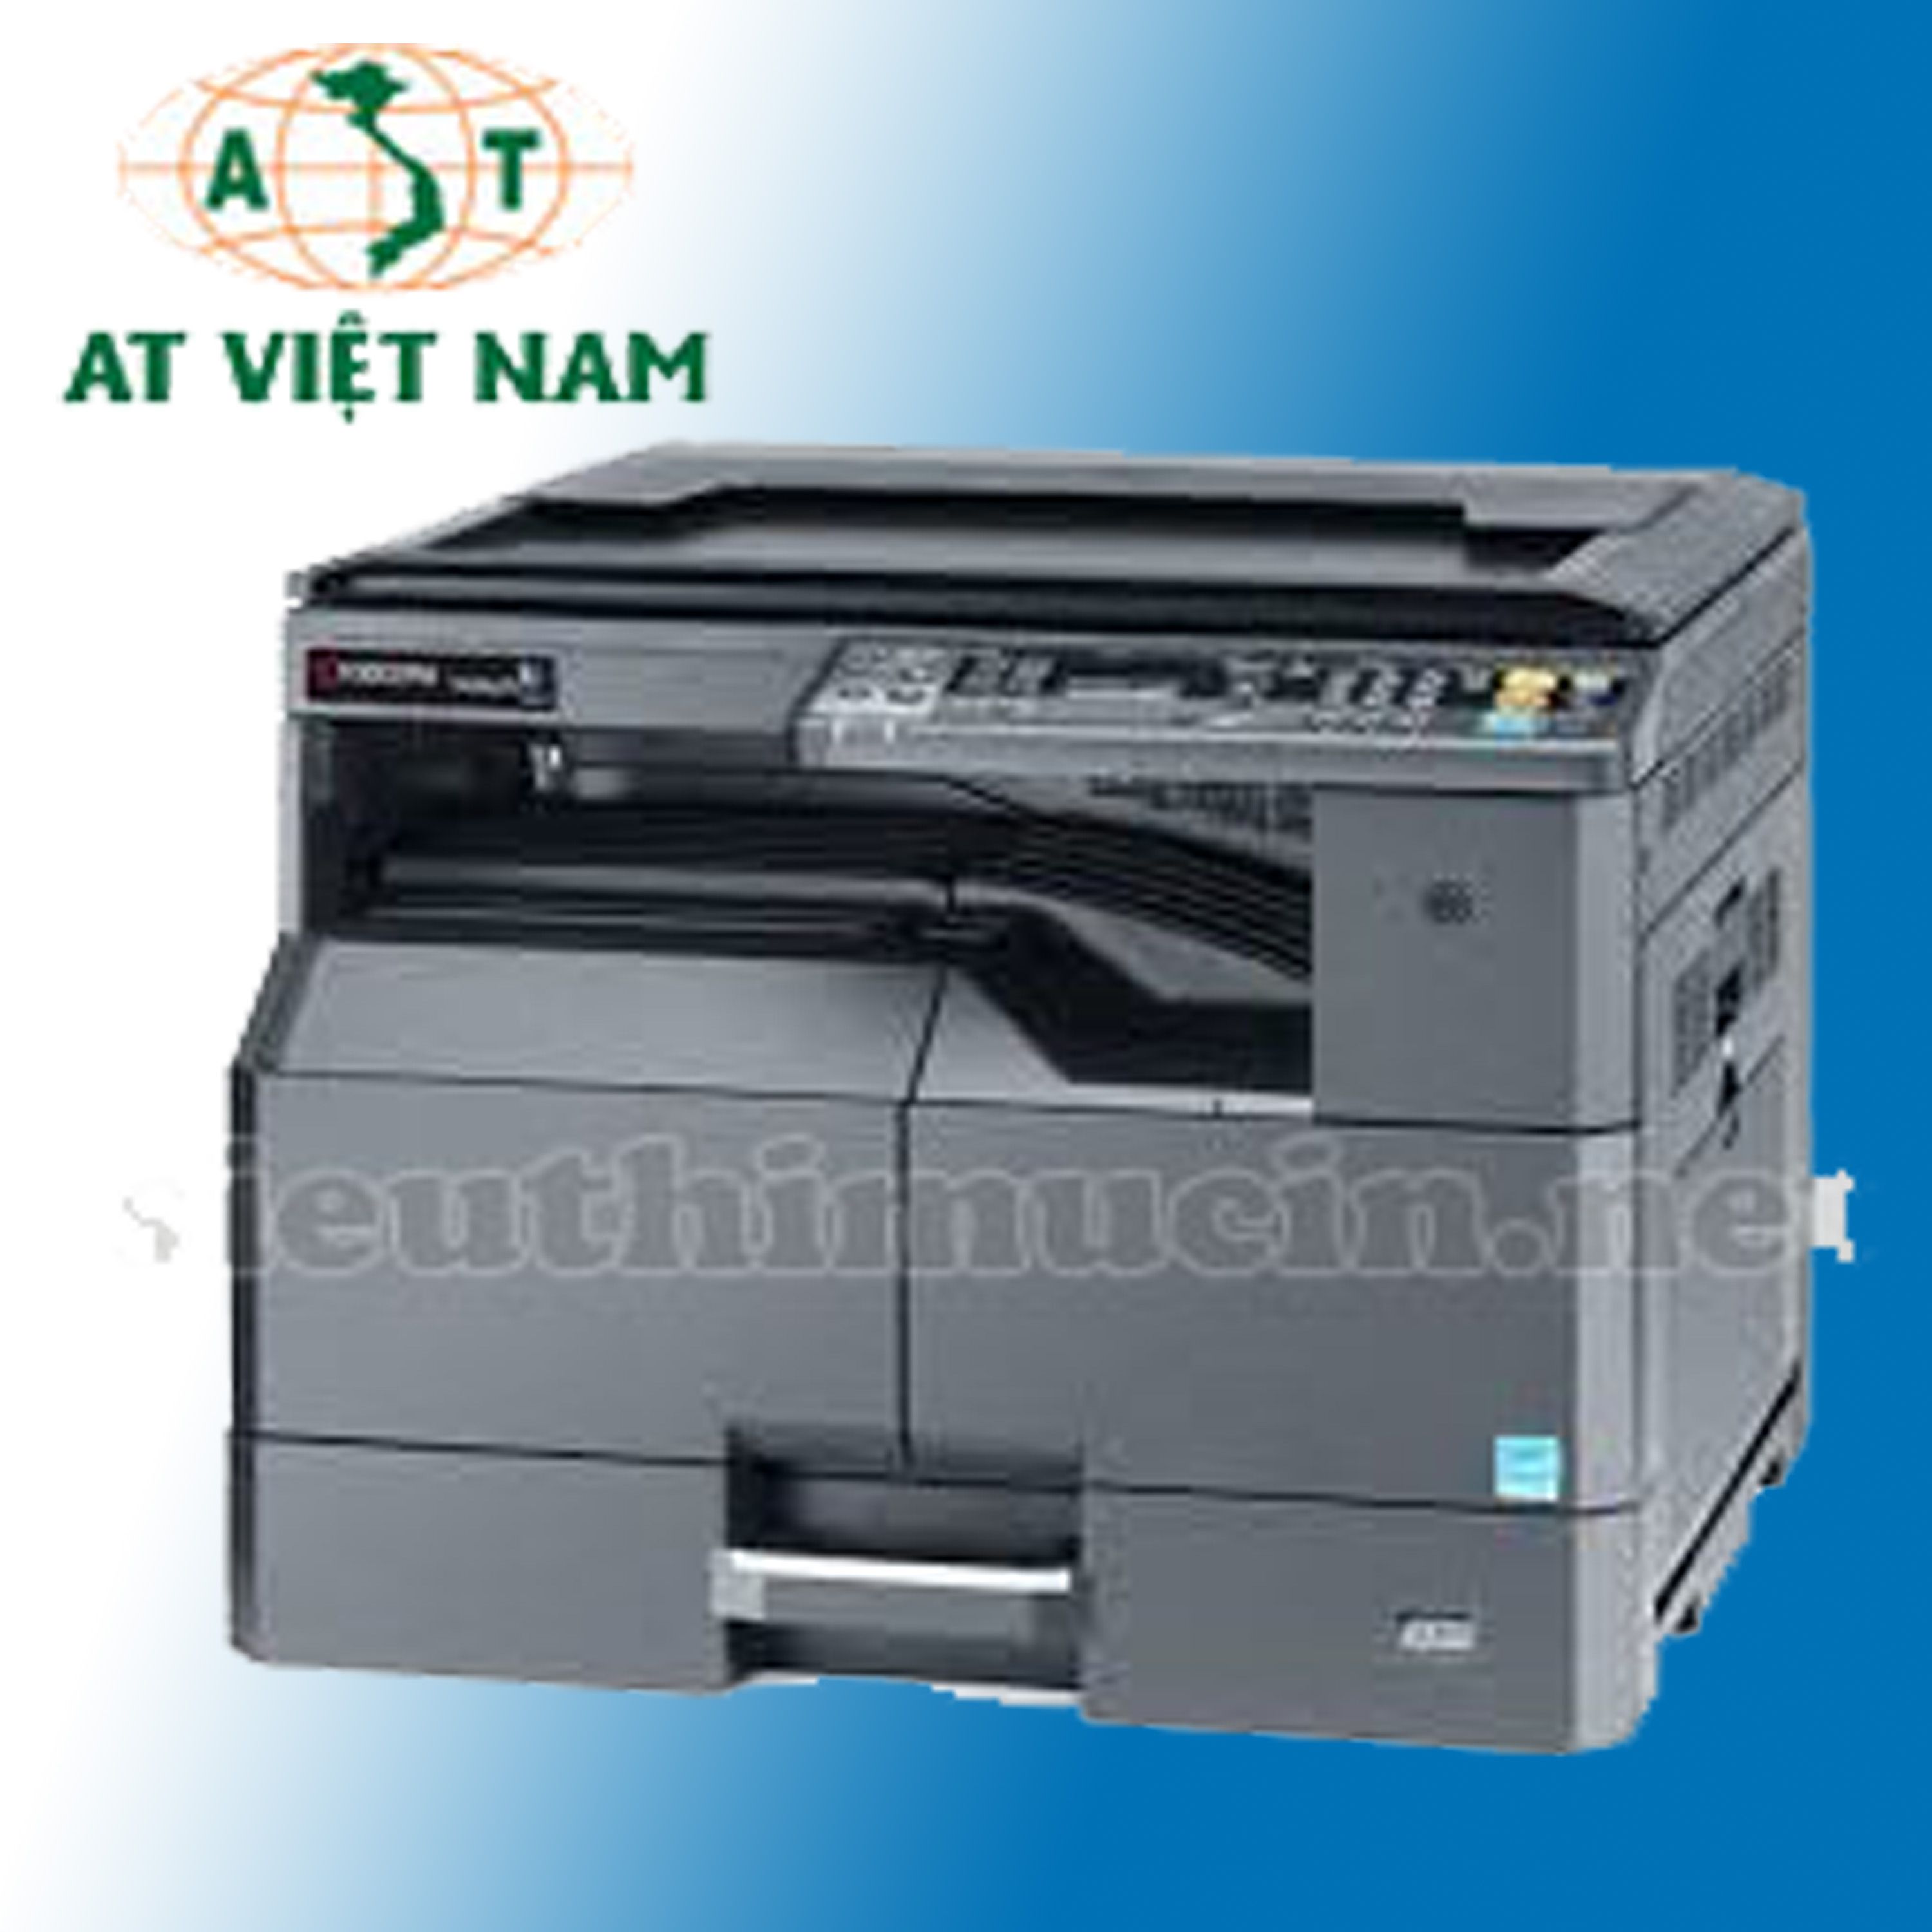 Giới thiệu máy photocopy Kyocera 2200